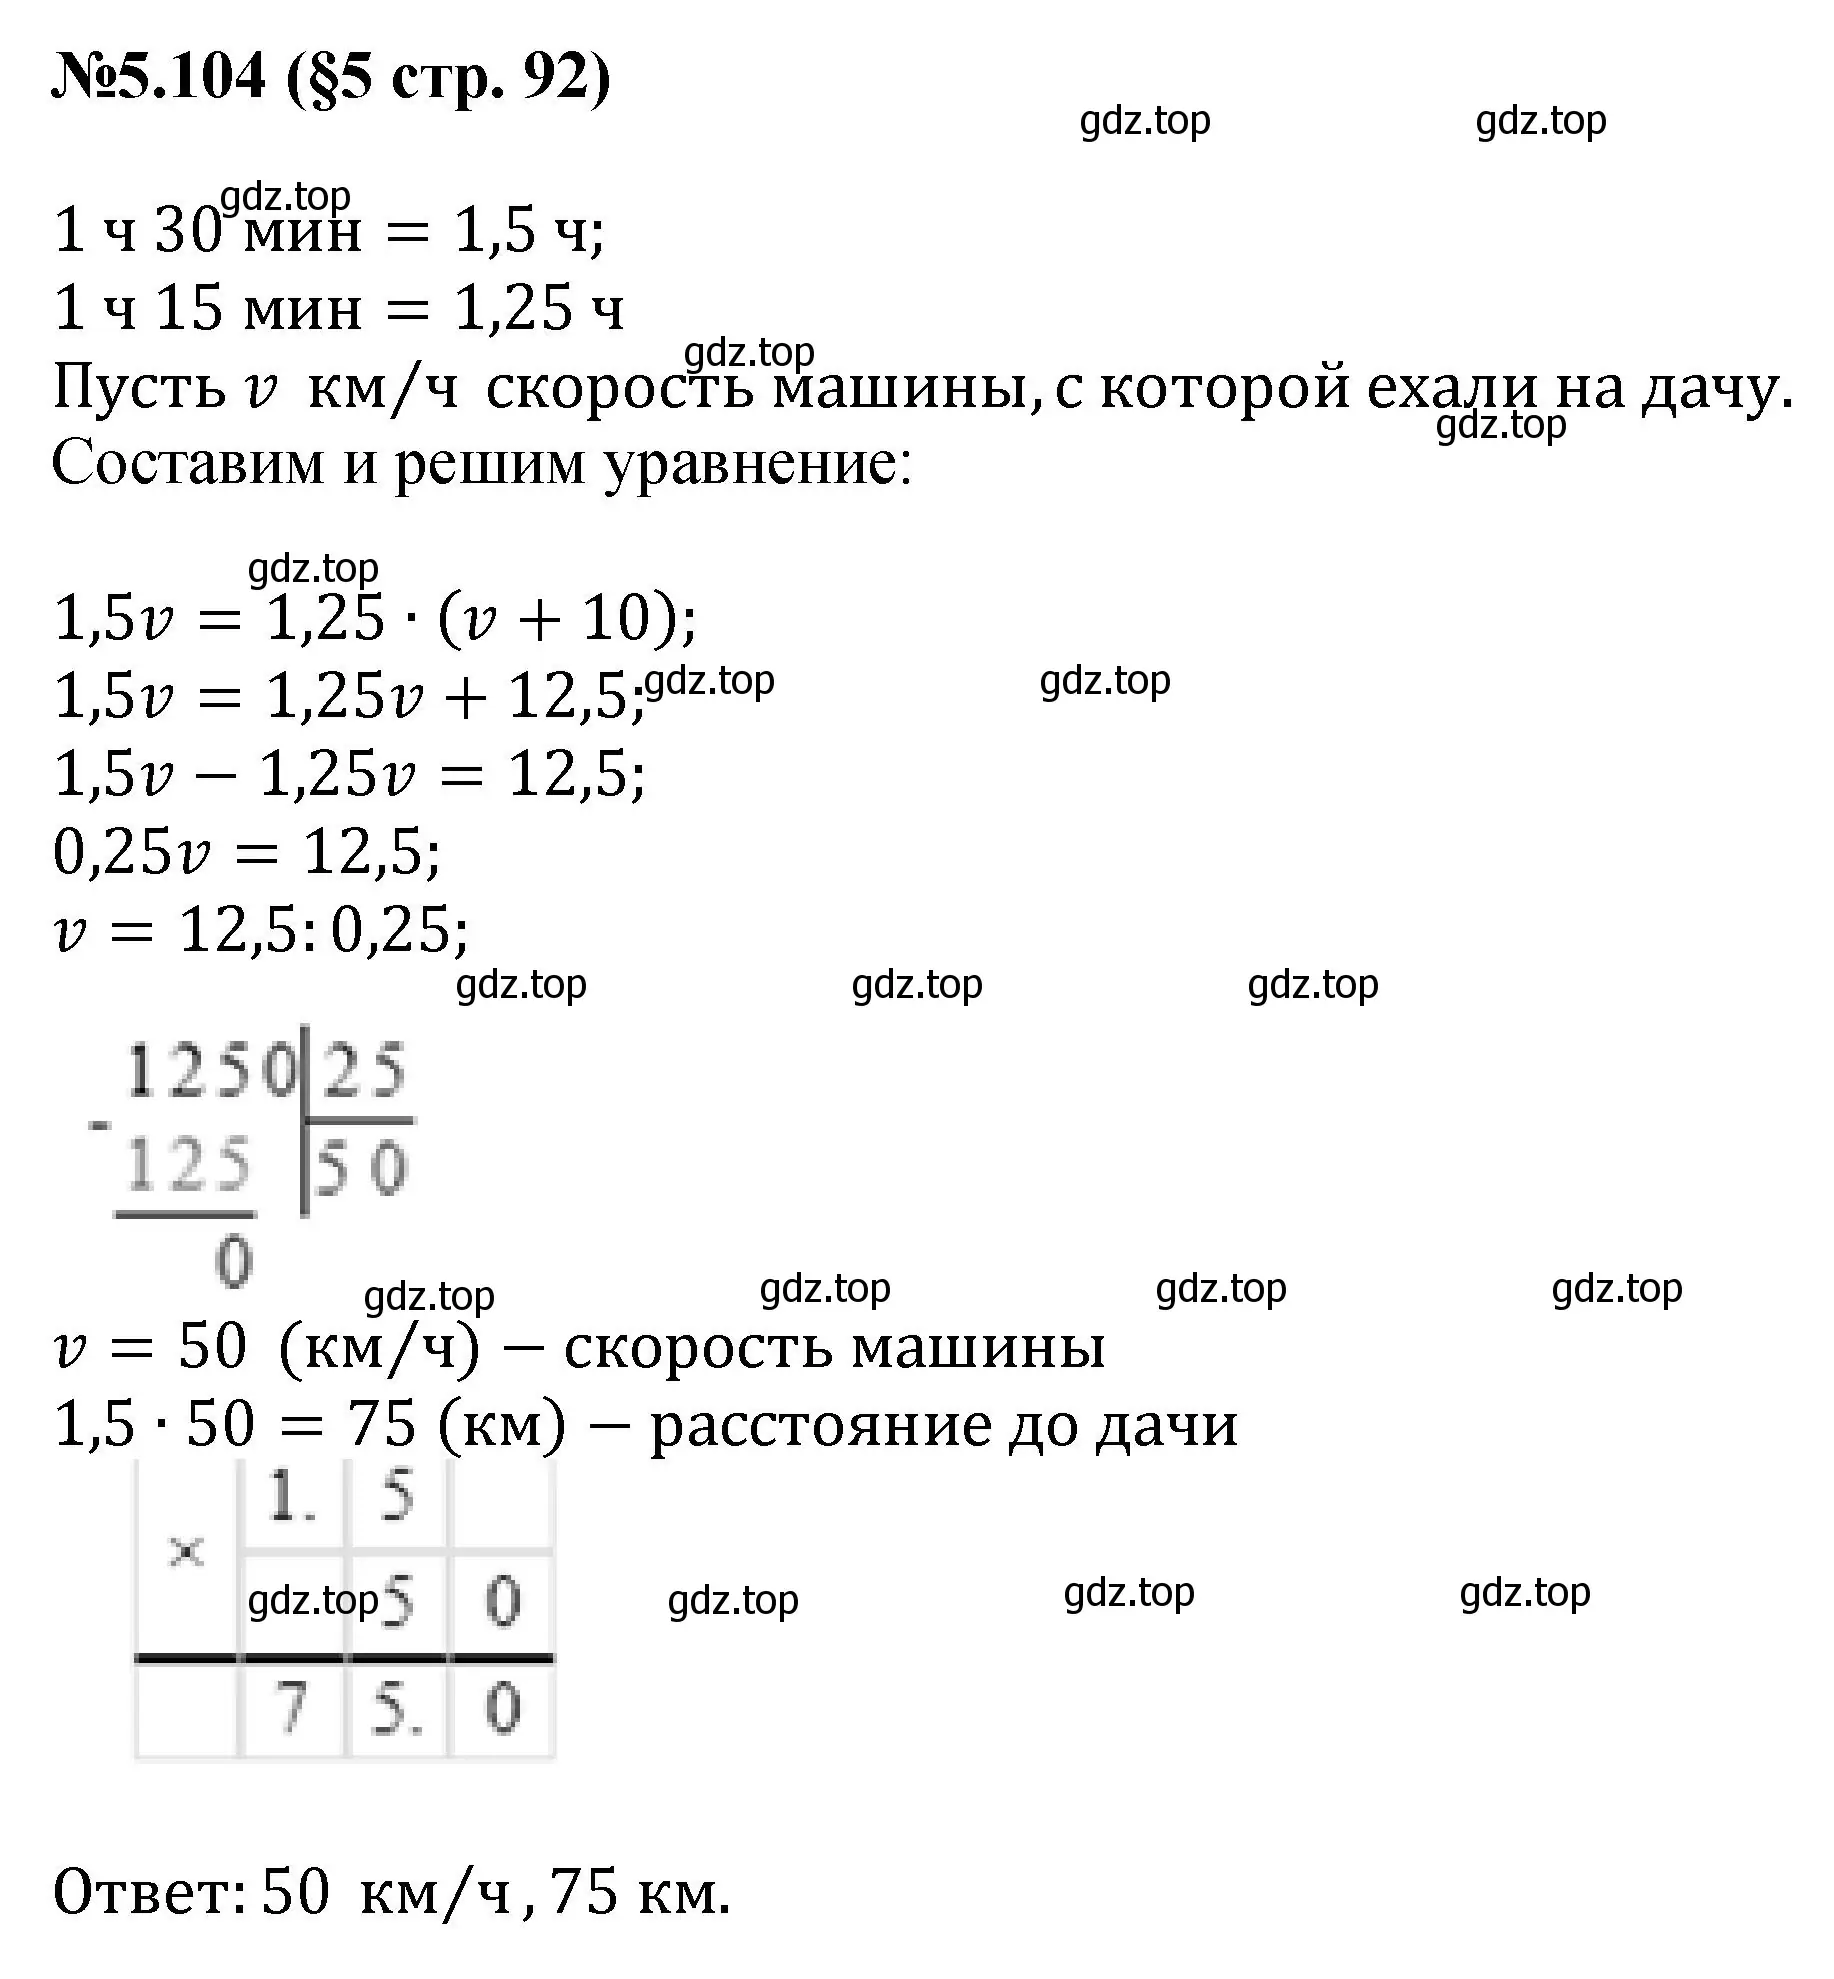 Решение номер 5.104 (страница 92) гдз по математике 6 класс Виленкин, Жохов, учебник 2 часть